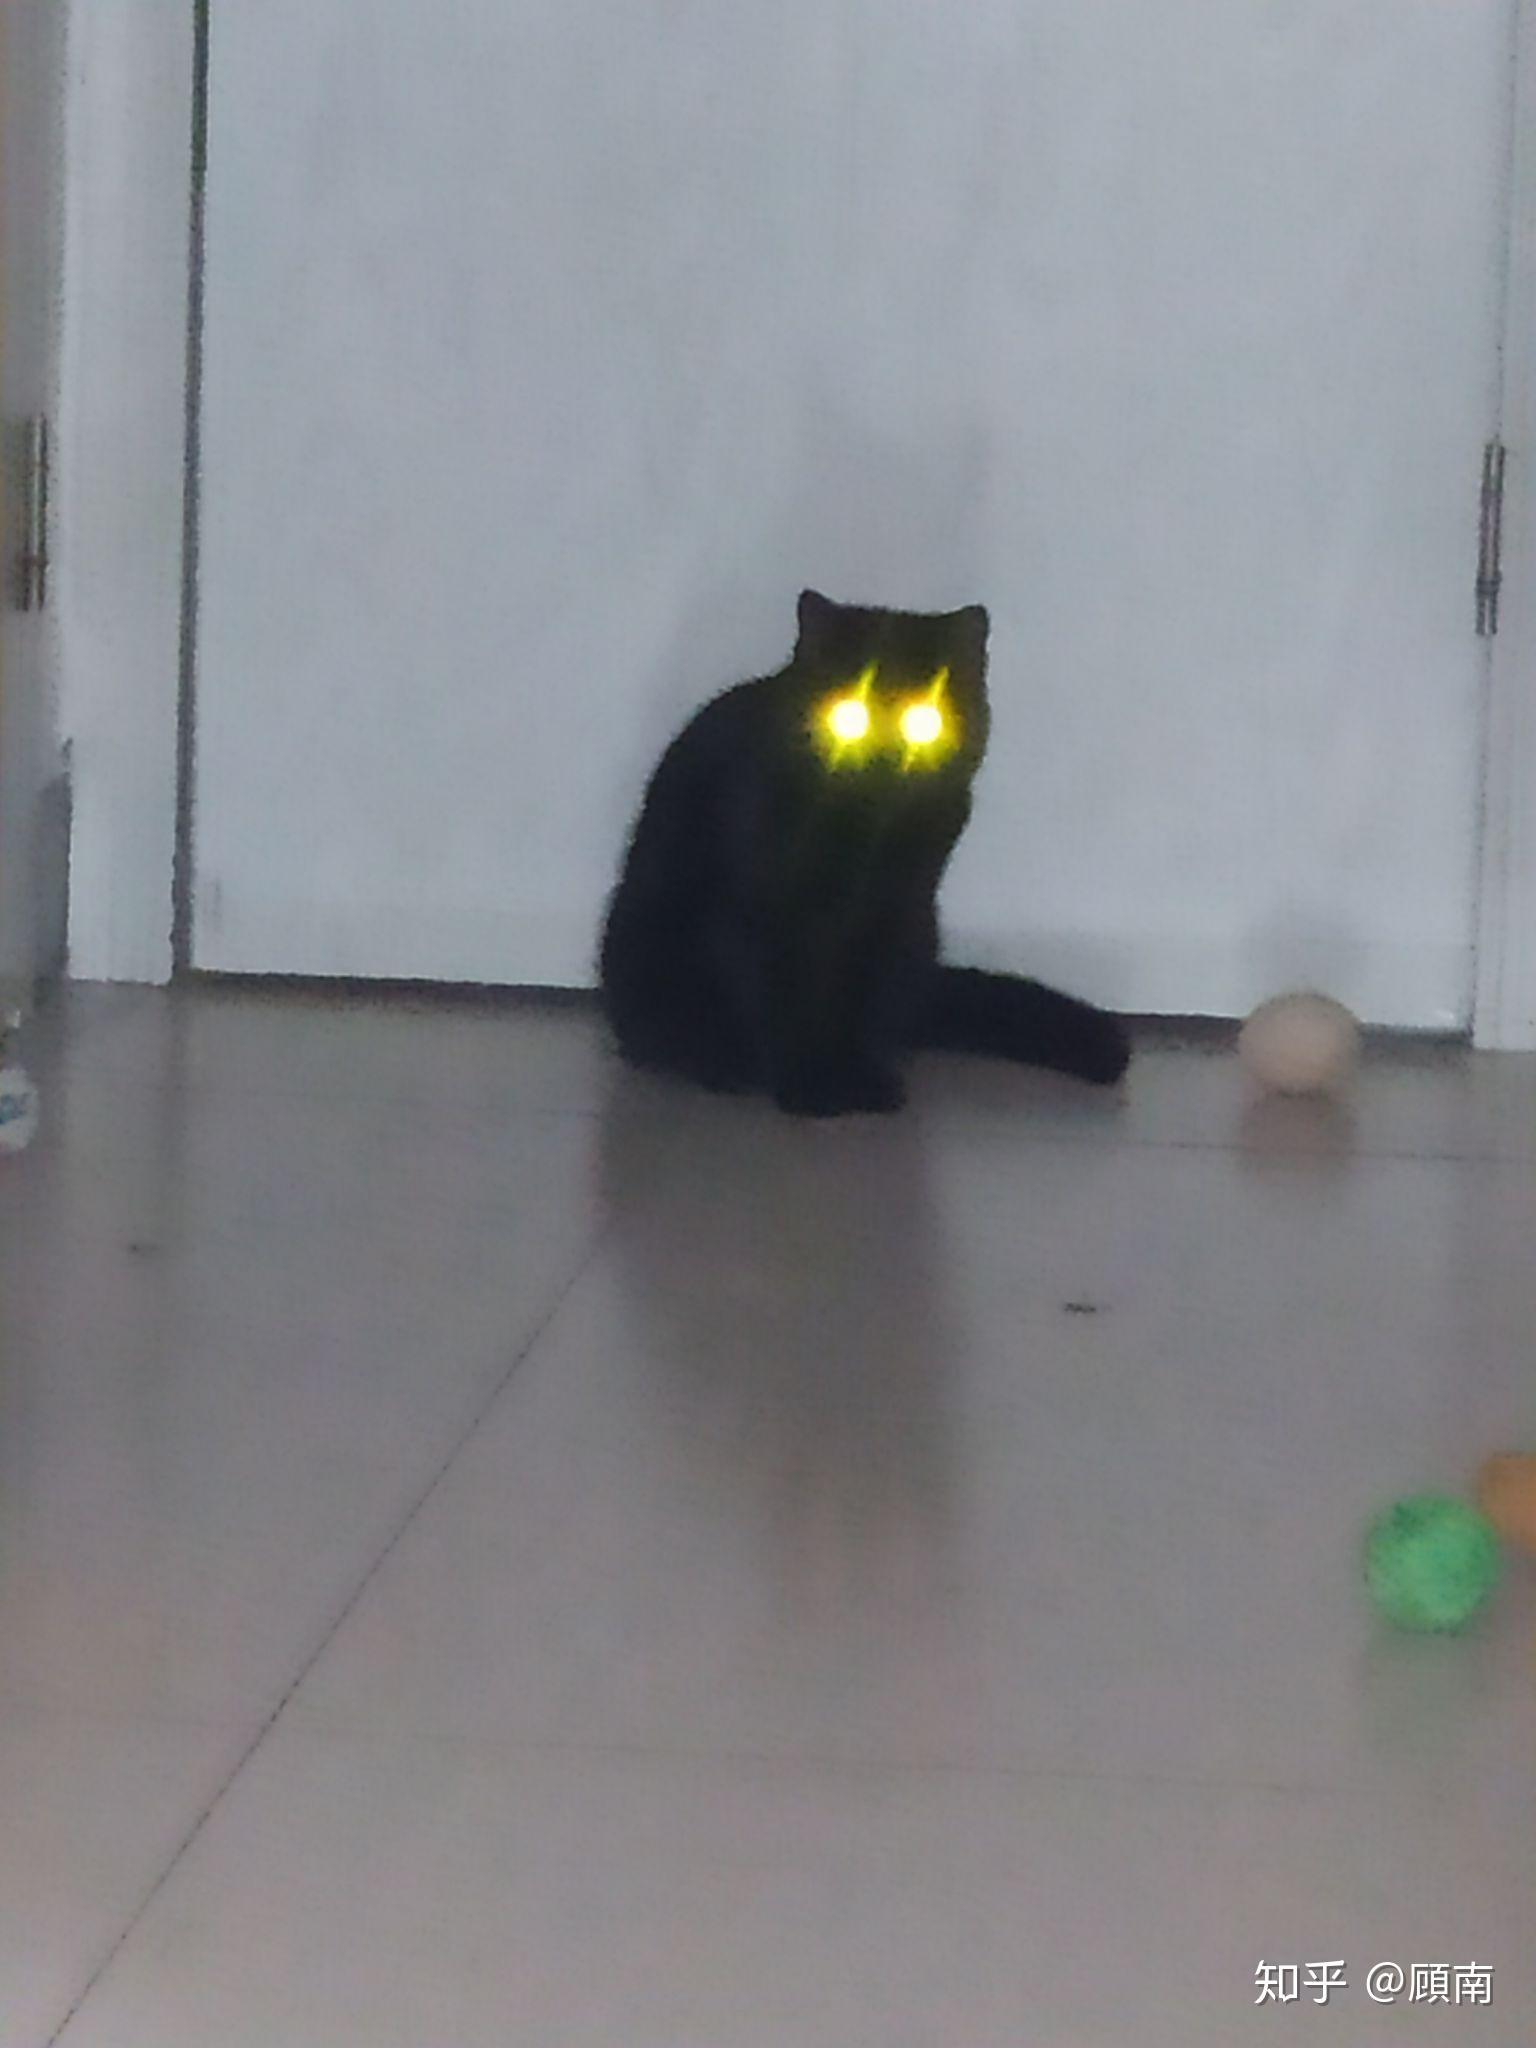 为什么黑猫眼睛都是黄的?